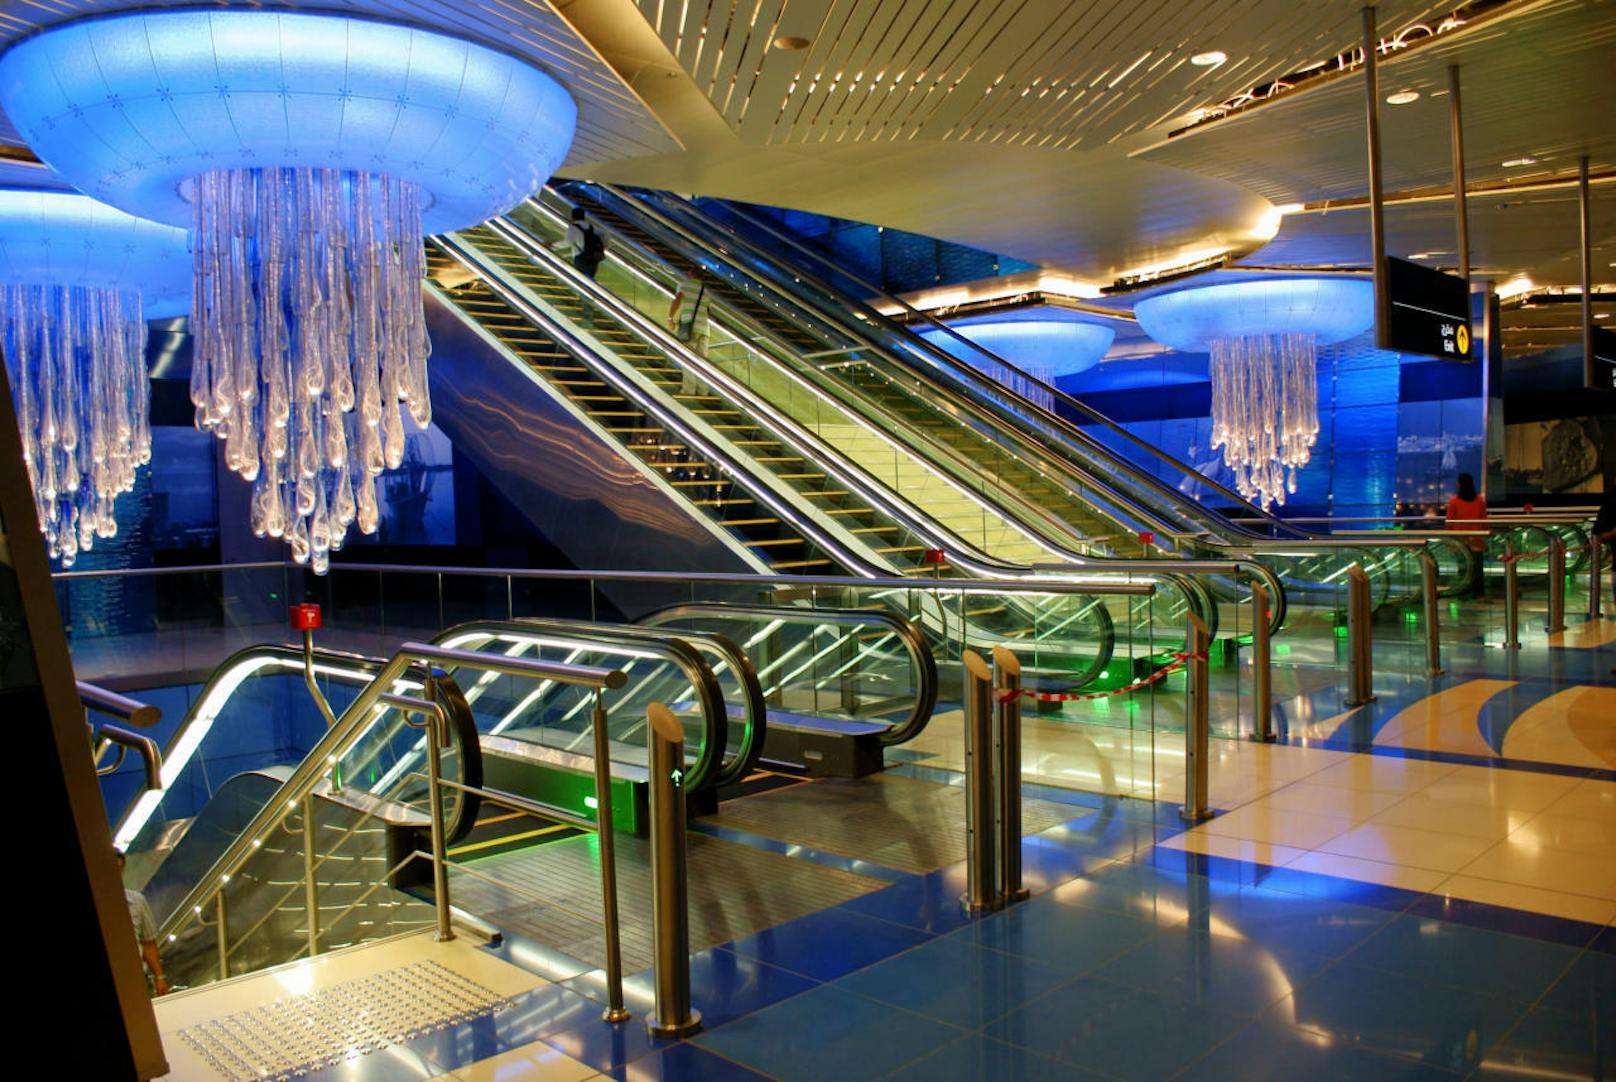 Auf Platz 9 liegt die Haltestelle BurJuman in Dubai. Die Dubai-Metro gibt es erst seit 2009, sie ist eine der neusten und modernsten U-Bahnen der Welt: Die Züge sind alle führerlos. Die Station hat das Thema «Wasser» und wurde so gestaltet, dass sich die Reisenden ein bisschen wie in einem Aquarium fühlen. Das Highlight: die etwas seltsamen Quallen-Kronleuchter.